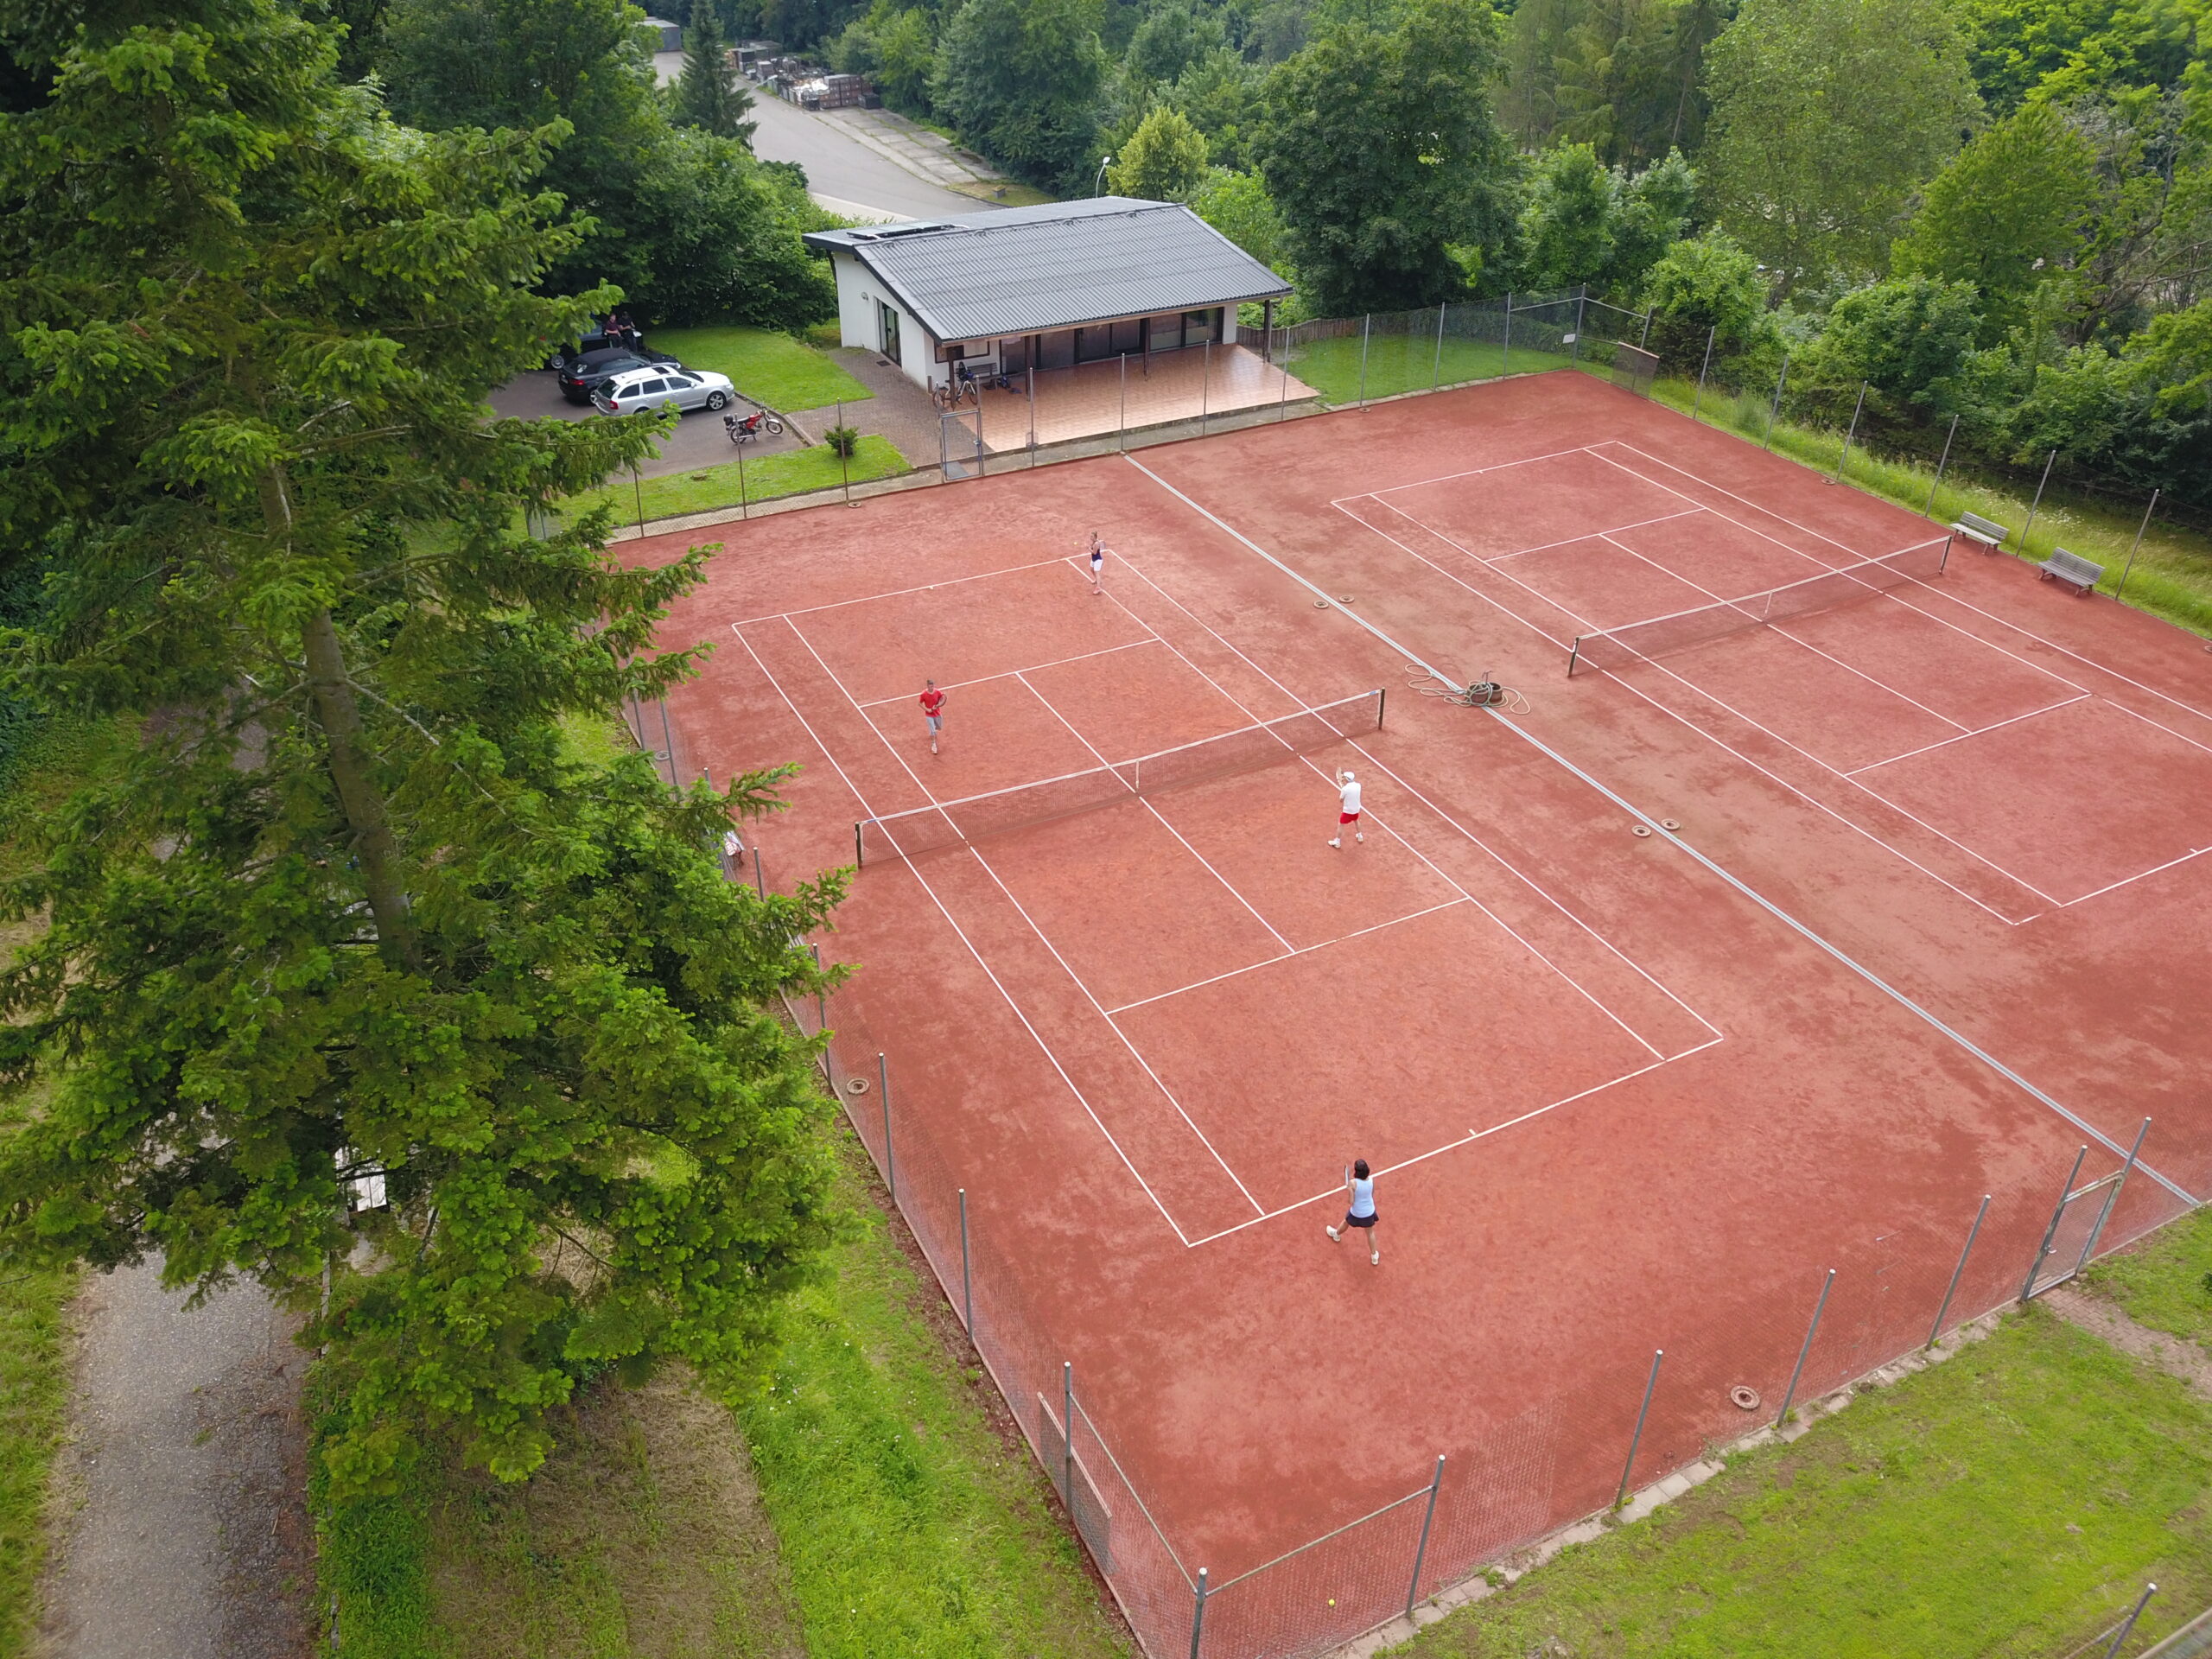 Tennisclub Schwarz Gelb Neckarzimmern